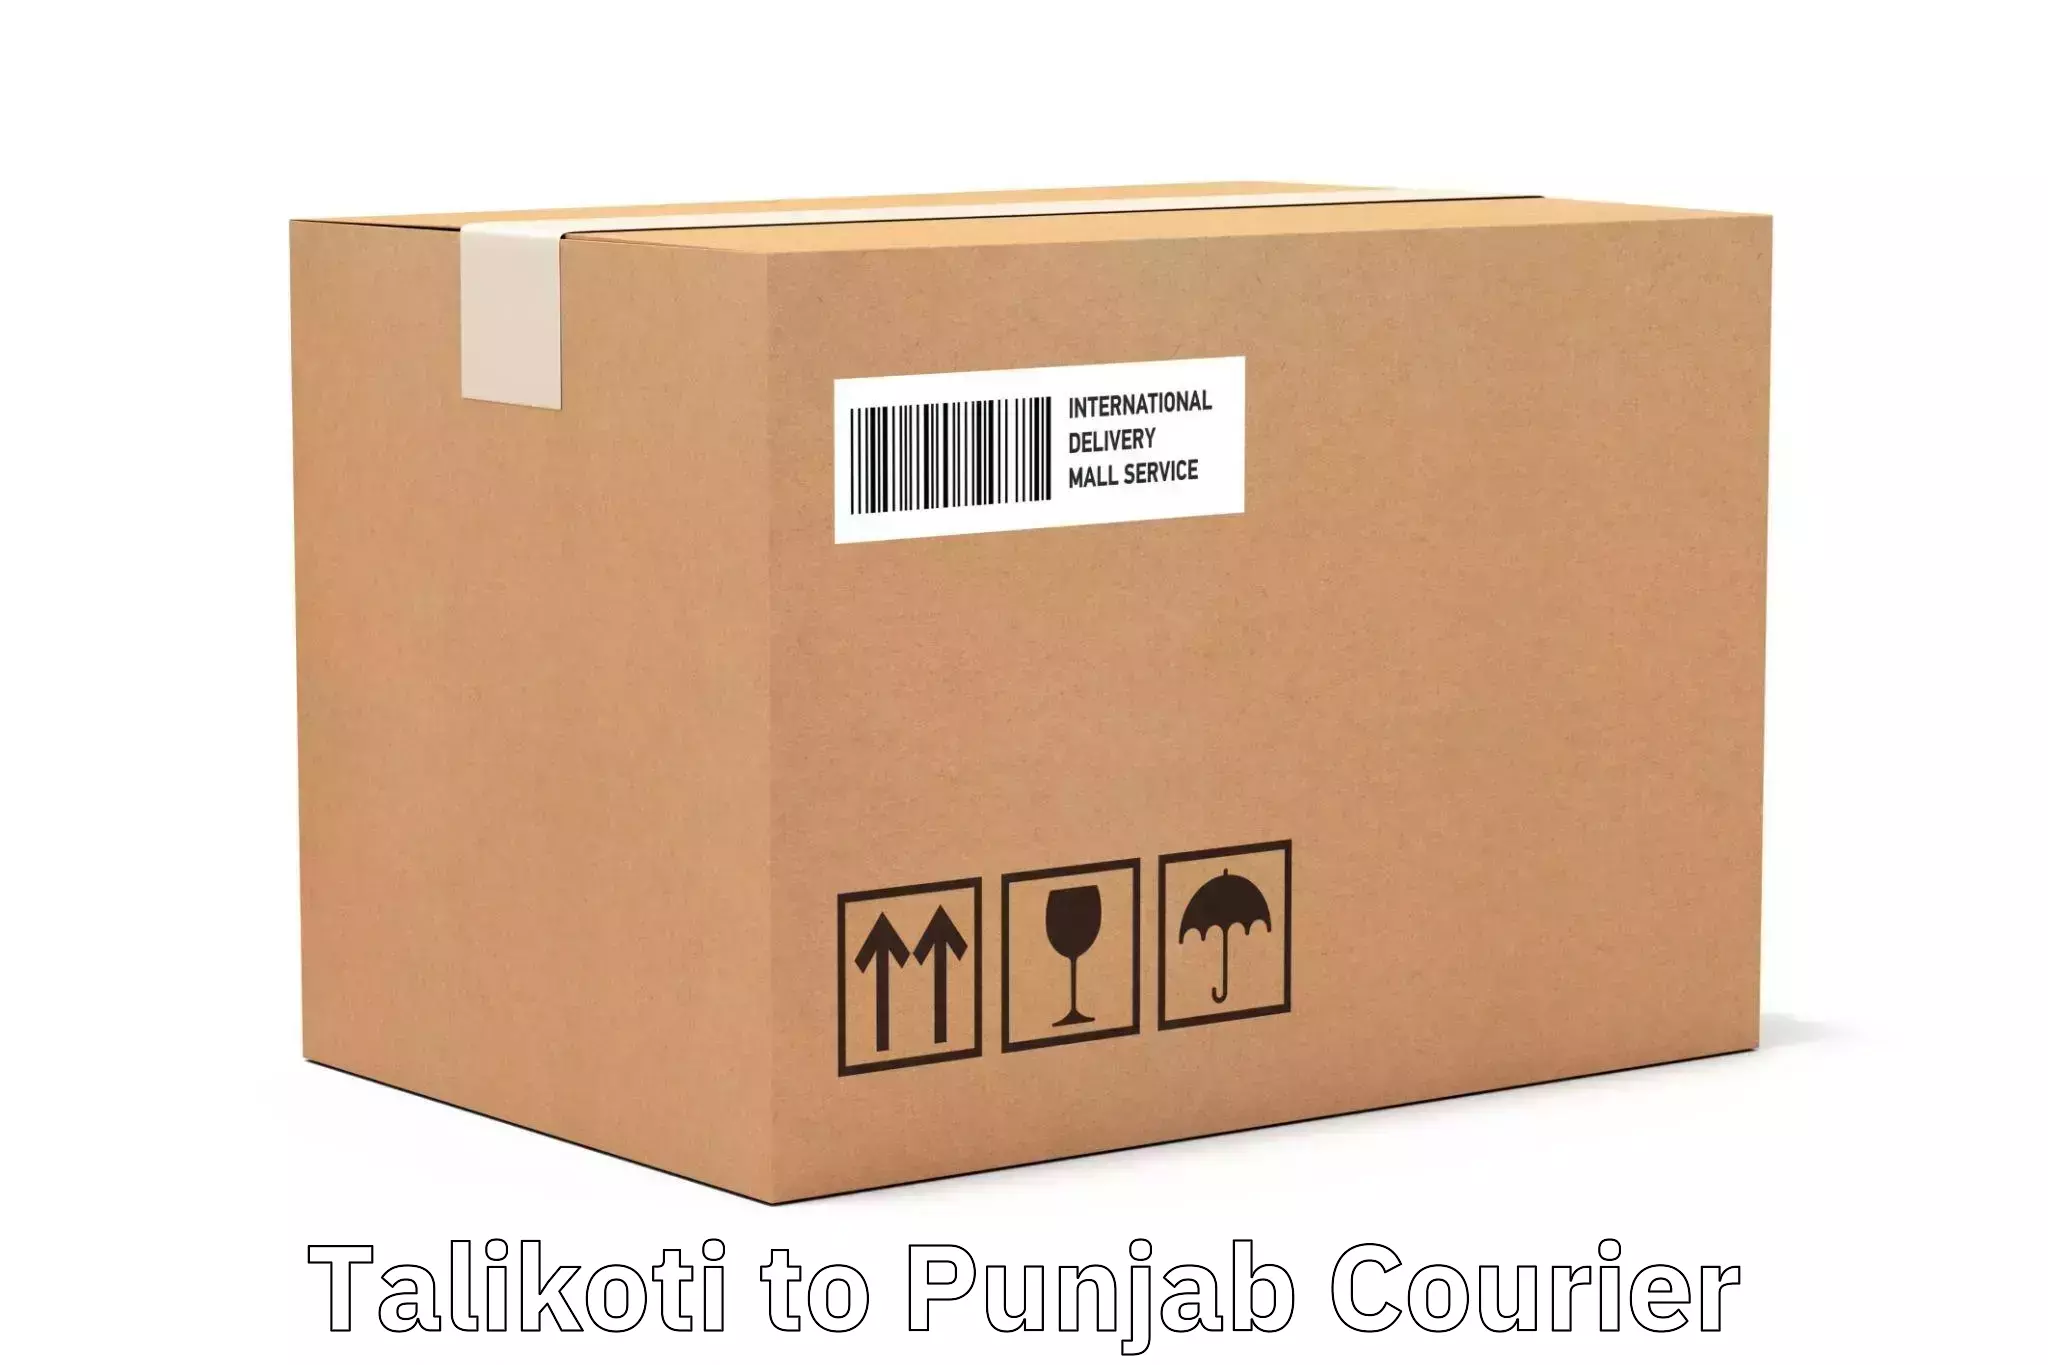 Premium courier solutions Talikoti to Rampura Phul